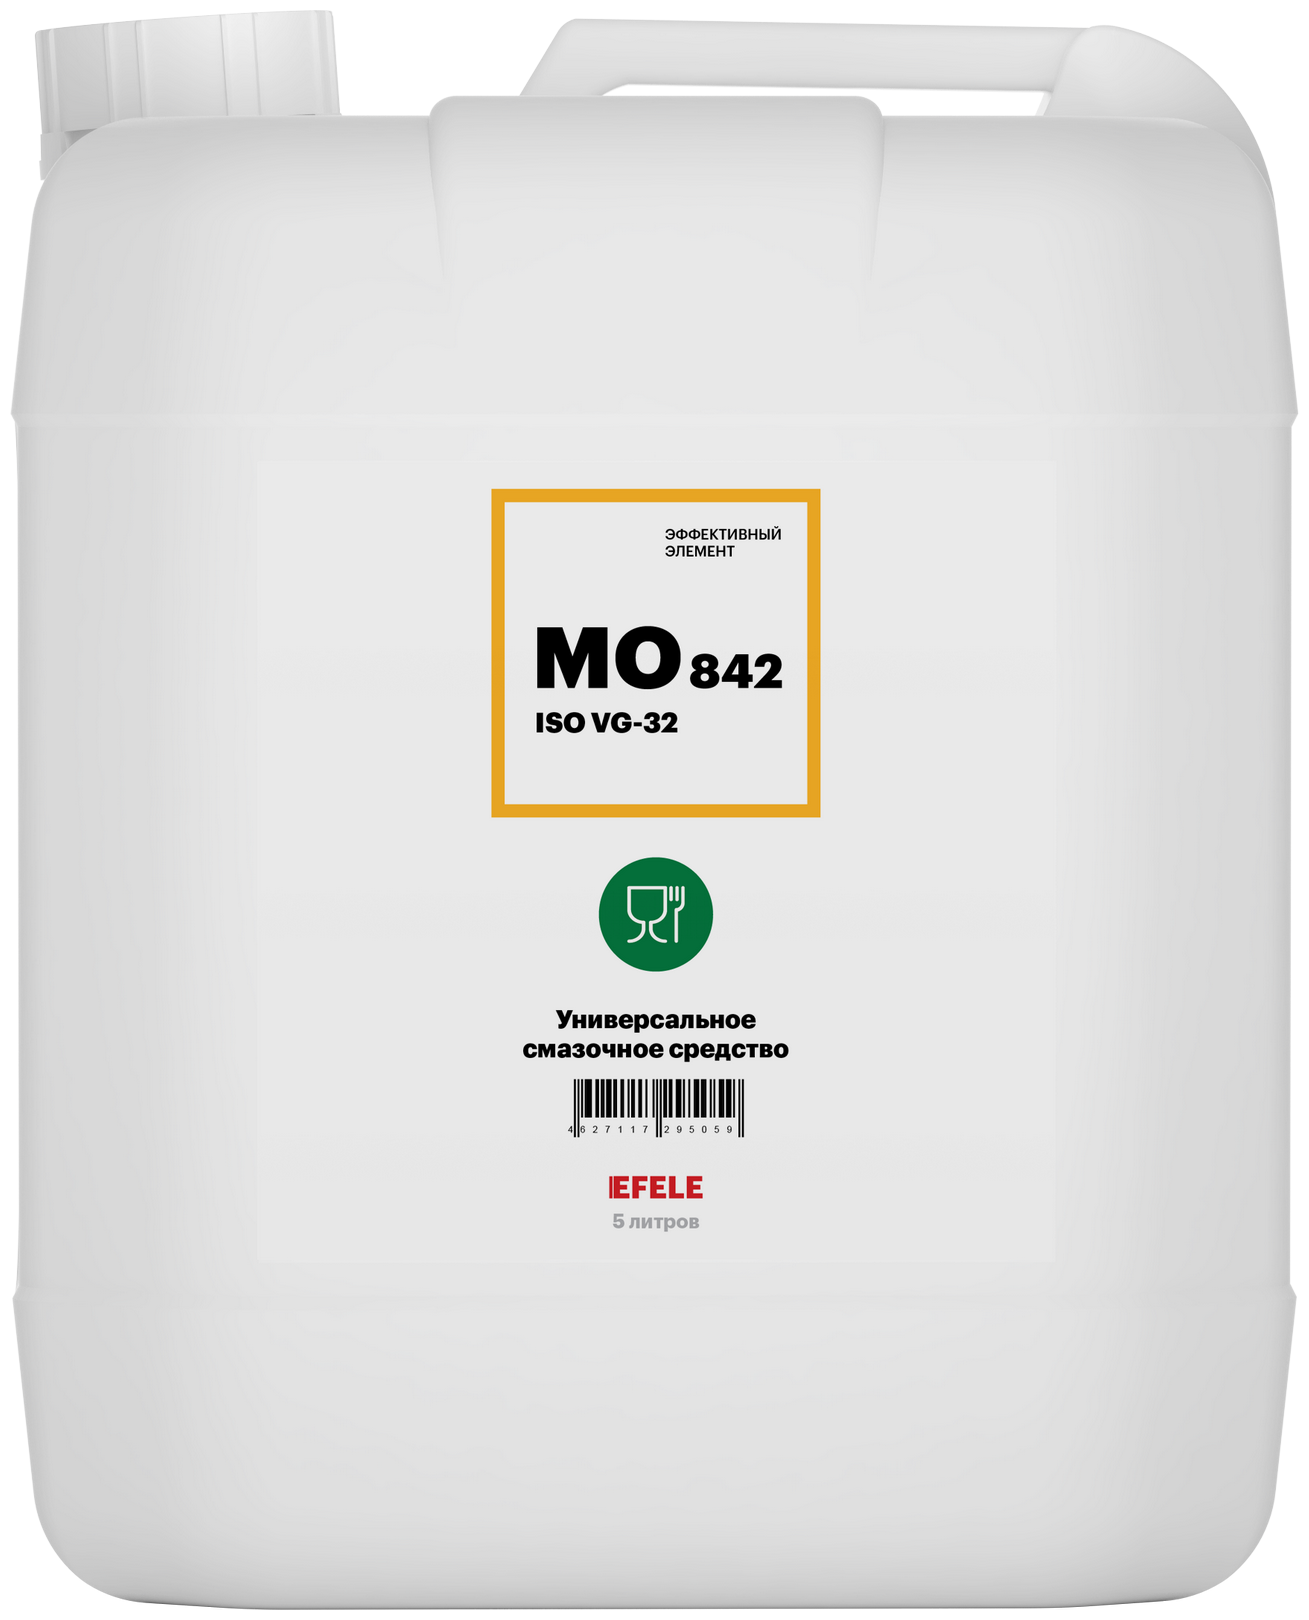 Медицинское масло с пищевым допуском EFELE MO-842 VG-32 (5 л)